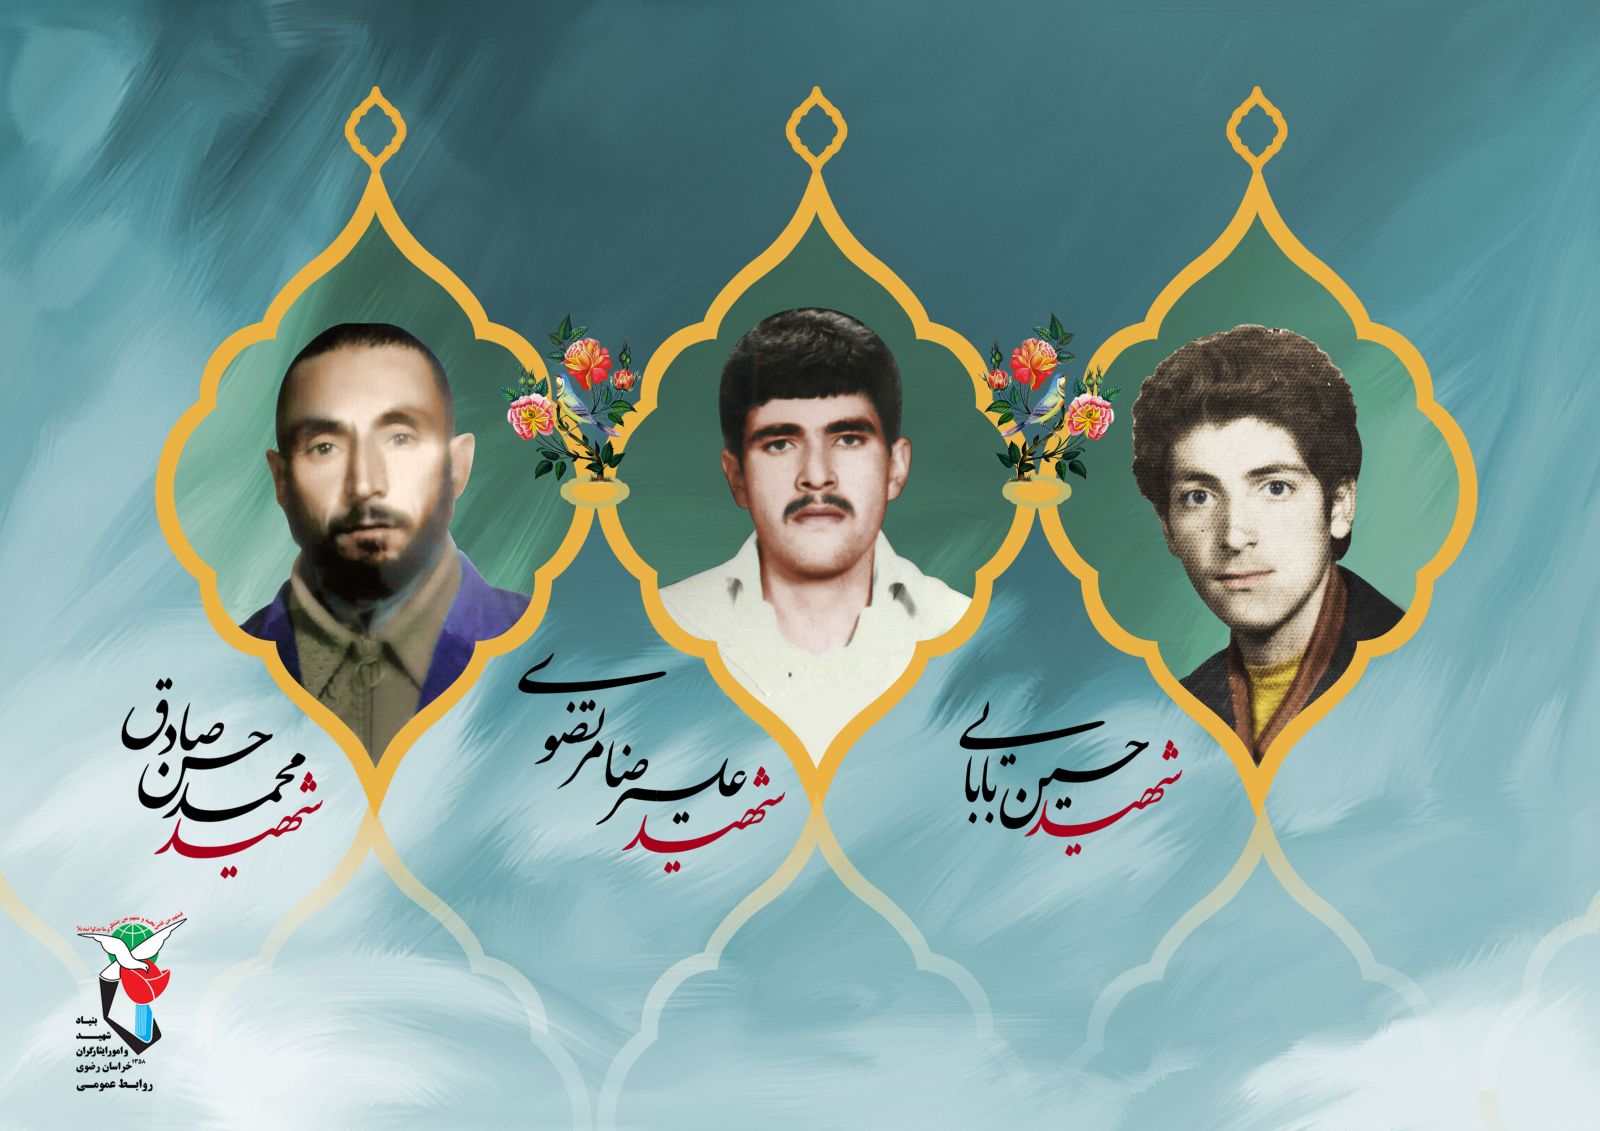 اعلام خبر شناسایی سه شهید گمنام به خانواده حماسه آفرین دفاع مقدس در مشهد